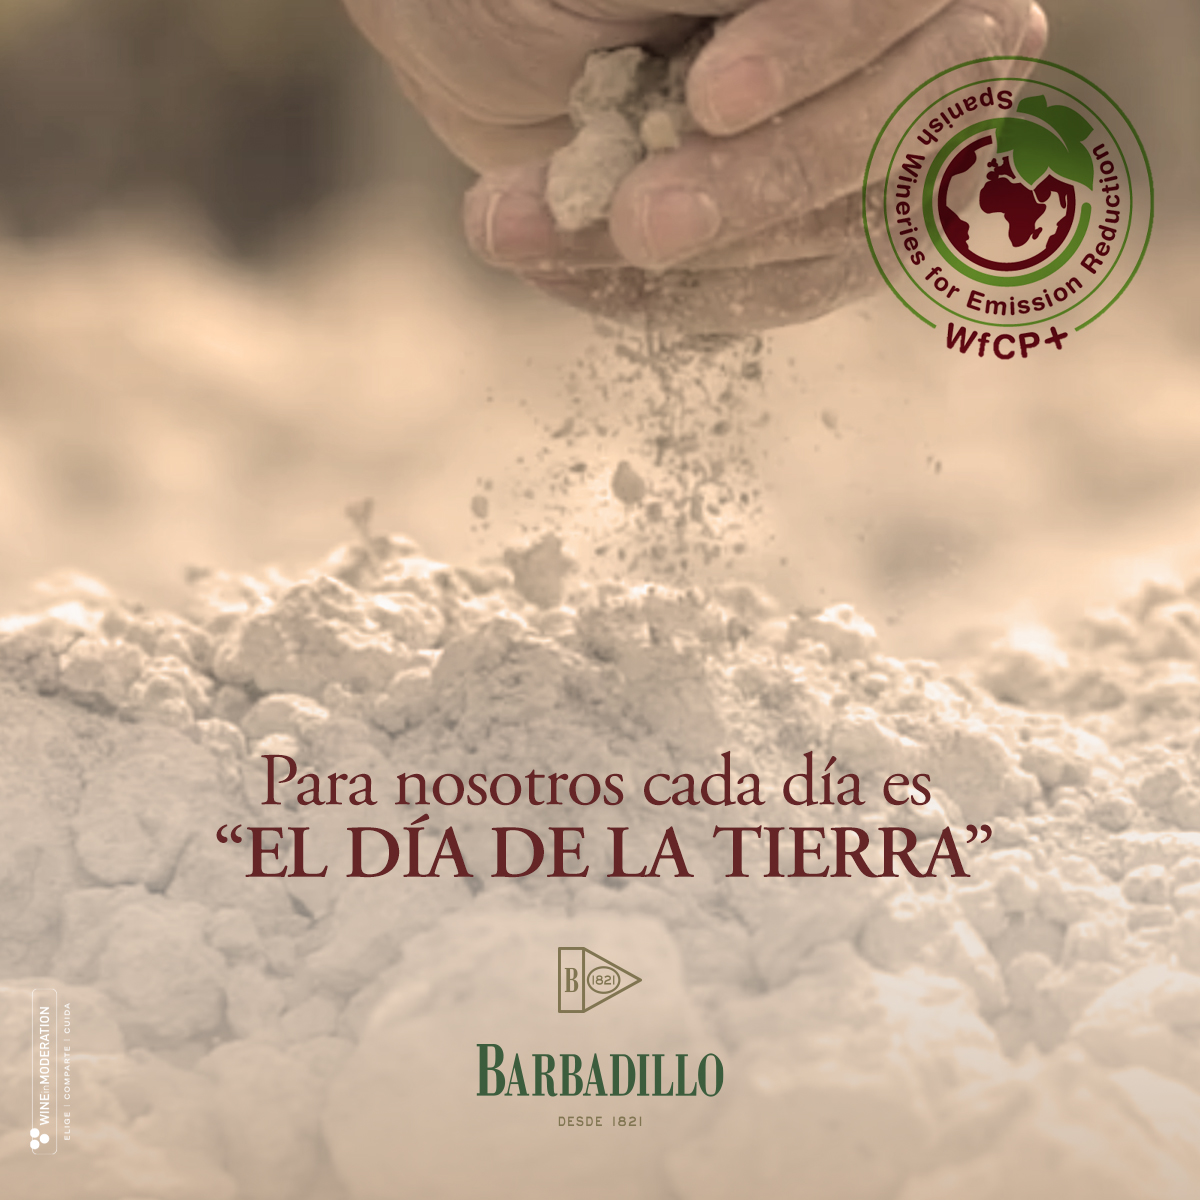 Barbadillo obtiene el certificado ‘Wineries for Climate Protection’